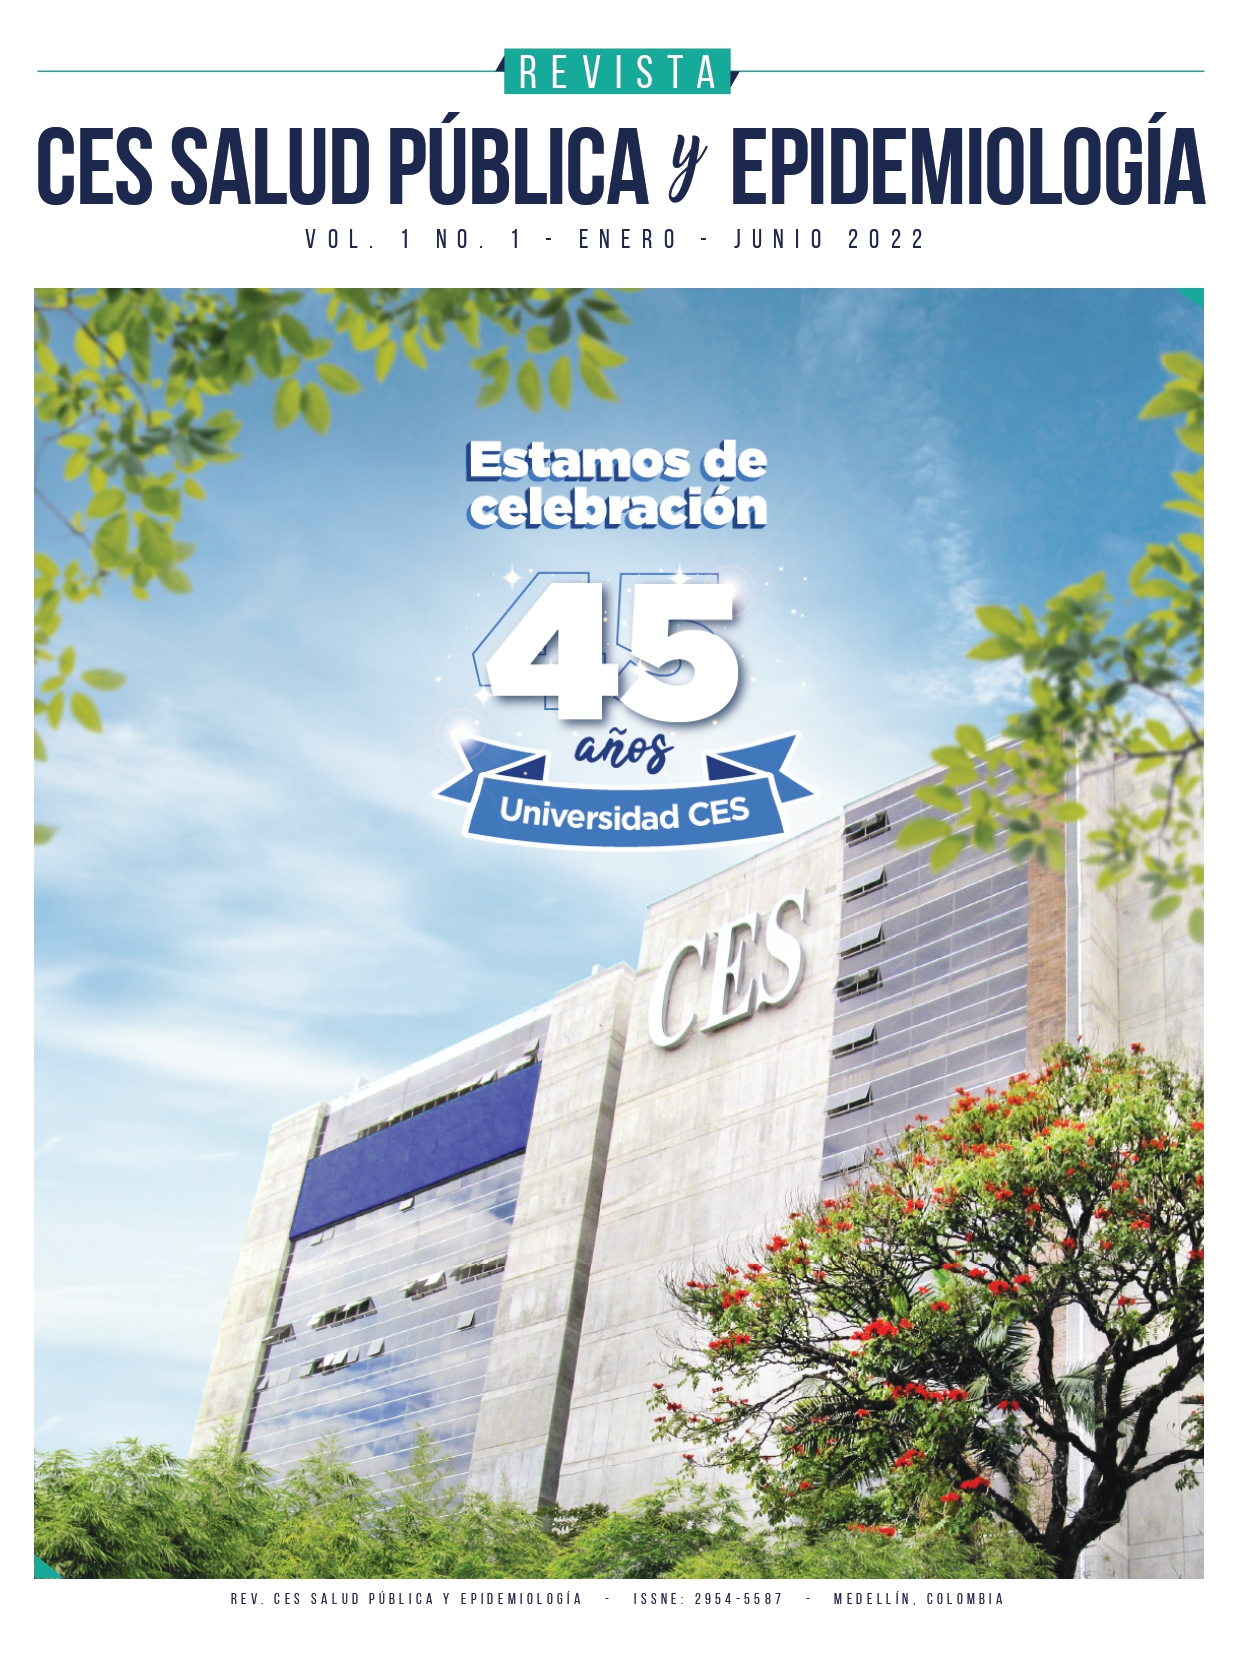 Portada Revista CES Salud Publica y Epidemiologia 1(1) 2022